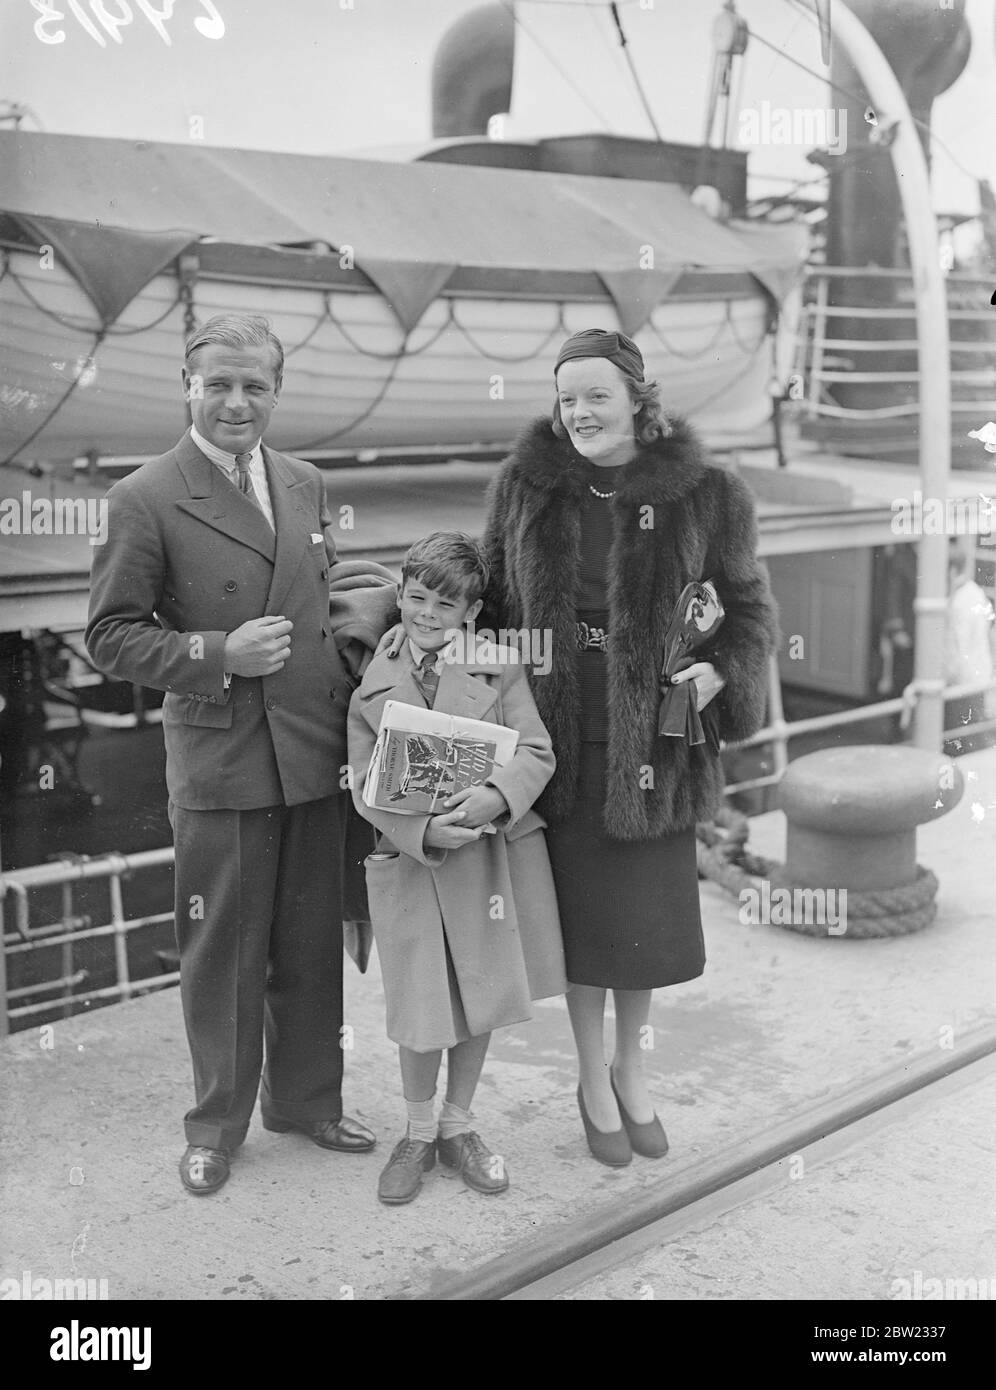 Viscount und Lady Mandeville, begleitet von ihrem achtjährigen Sohn, Lord Montagu of Kimbolton, kamen nach sechs Monaten 20,000 Meilen nach Amerika auf dem Linienschiff Europa in Southampton an. Viscount Mandeville ist ein Sohn des Herzogs von Manchester. September 1937 Stockfoto